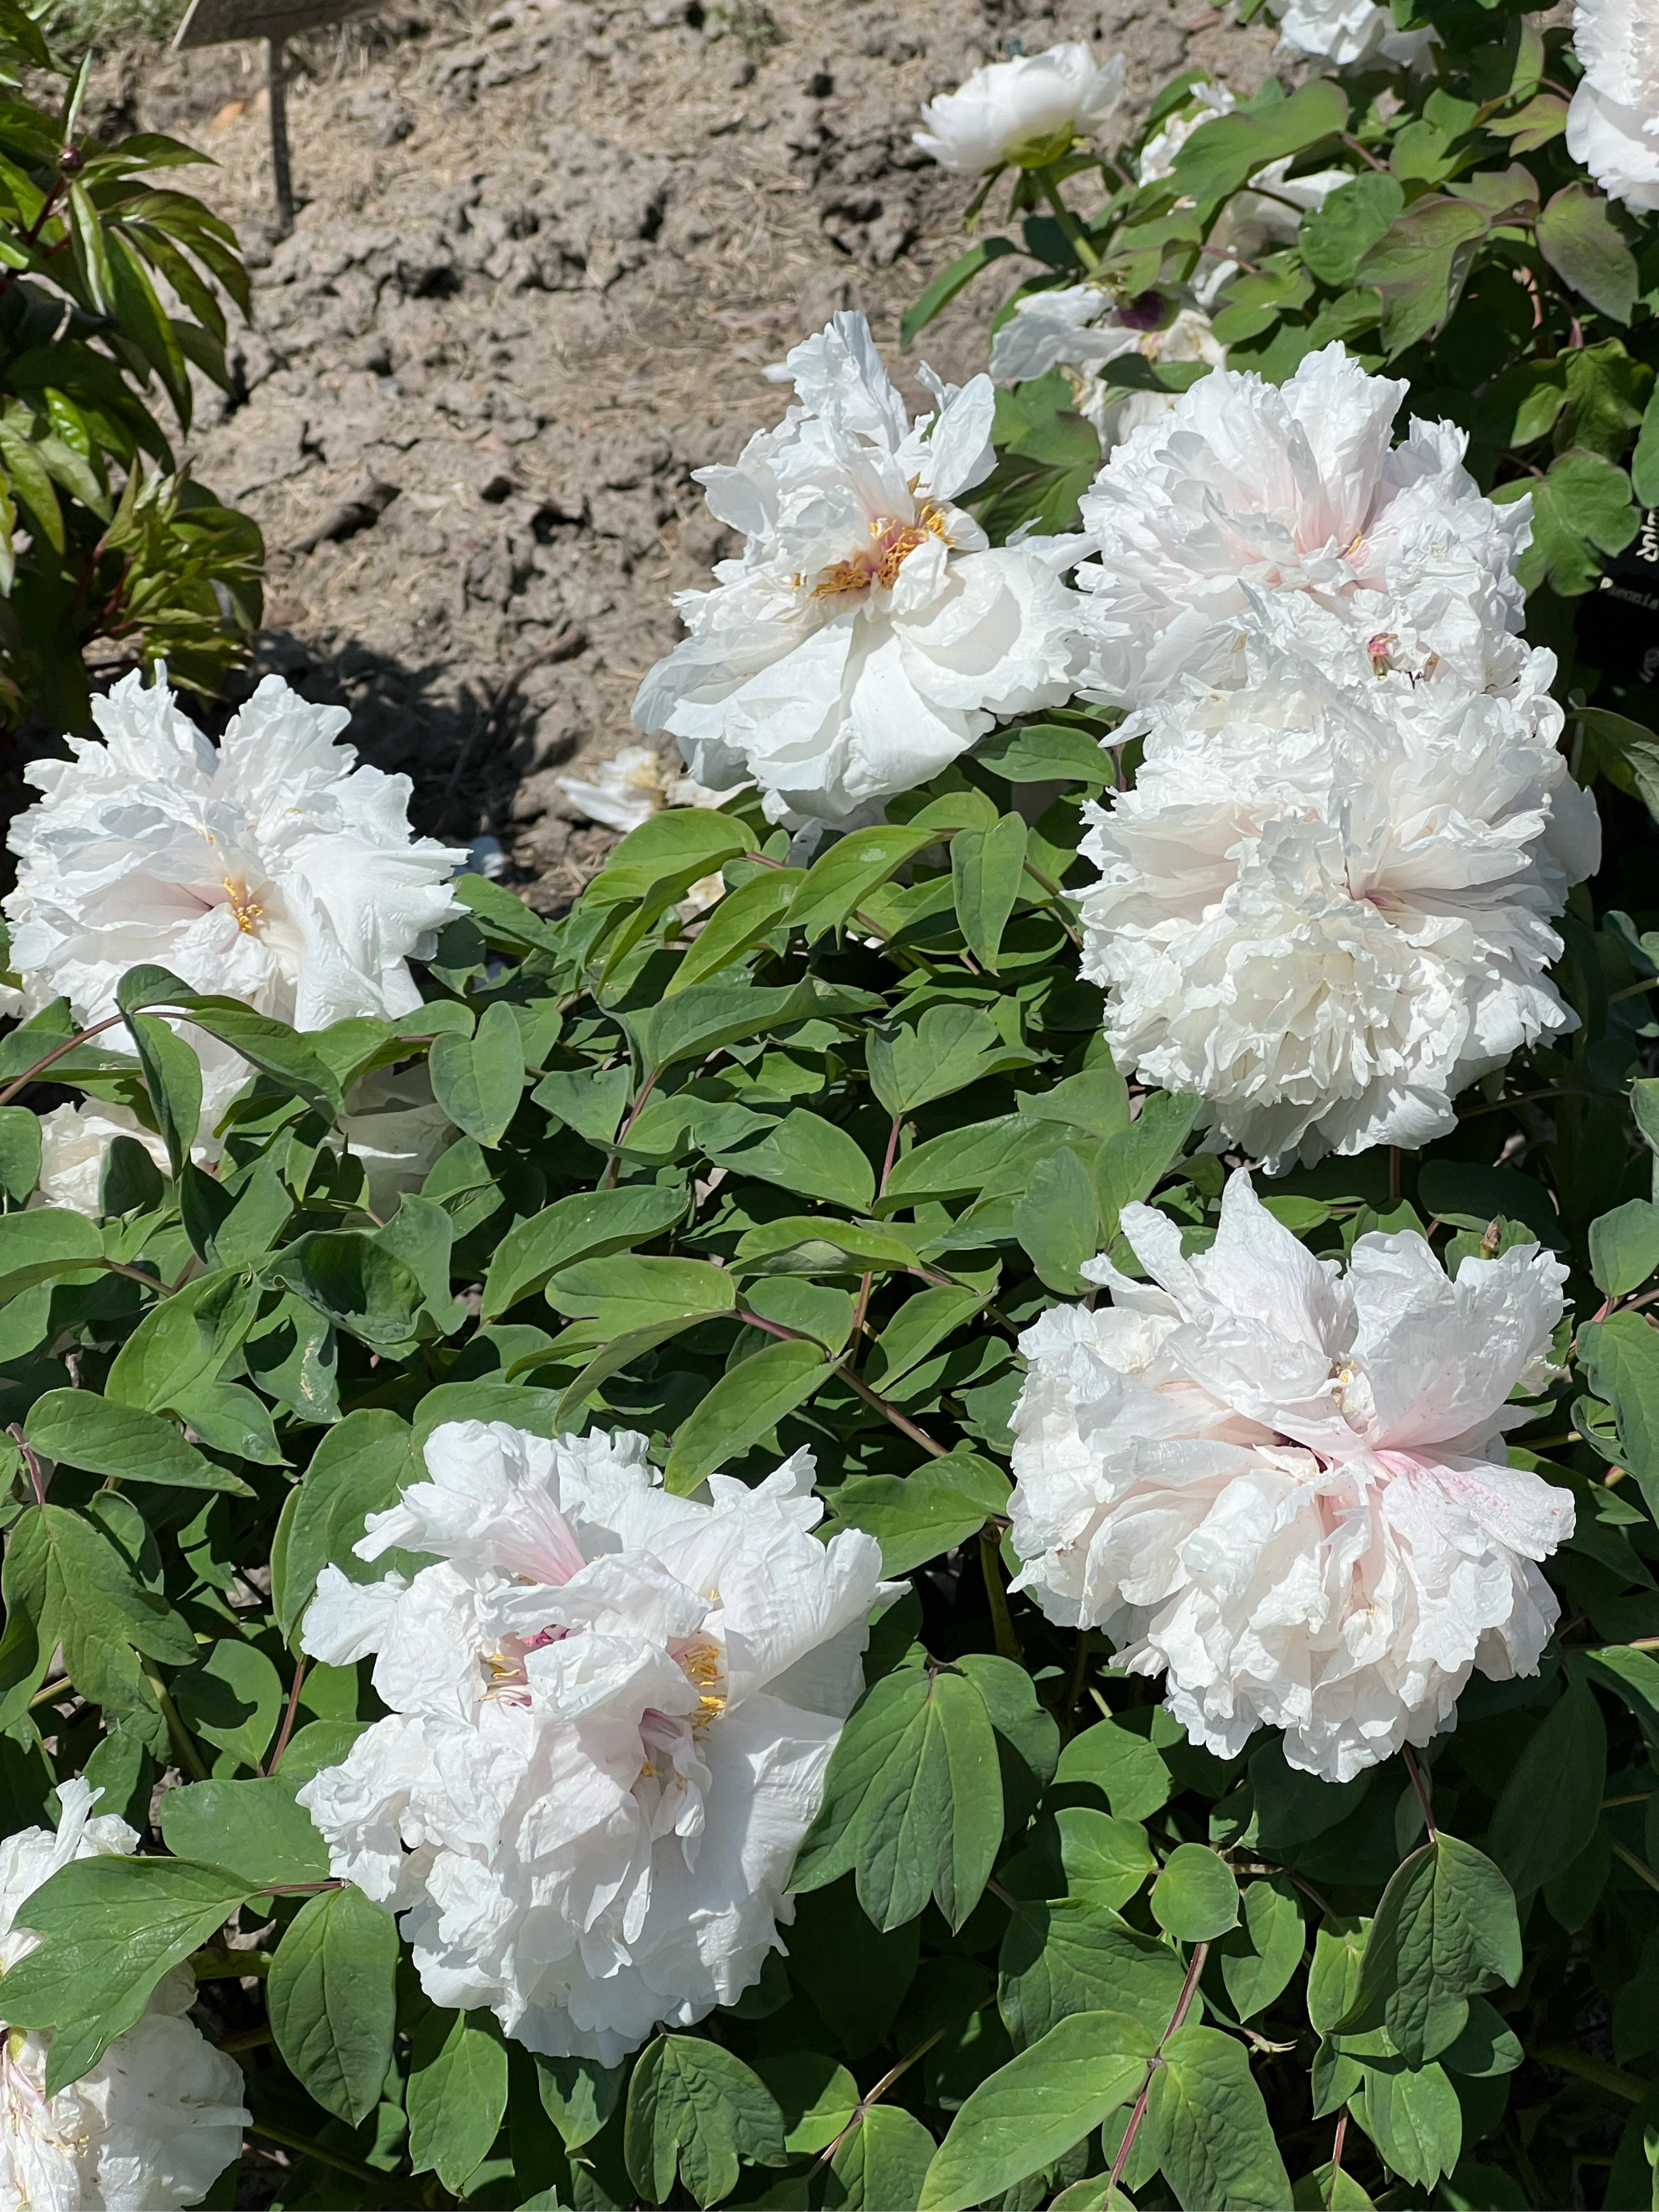 植物园里的白雪塔牡丹,花朵硕大,洁白高雅,初开时绿白色,盛开时呈